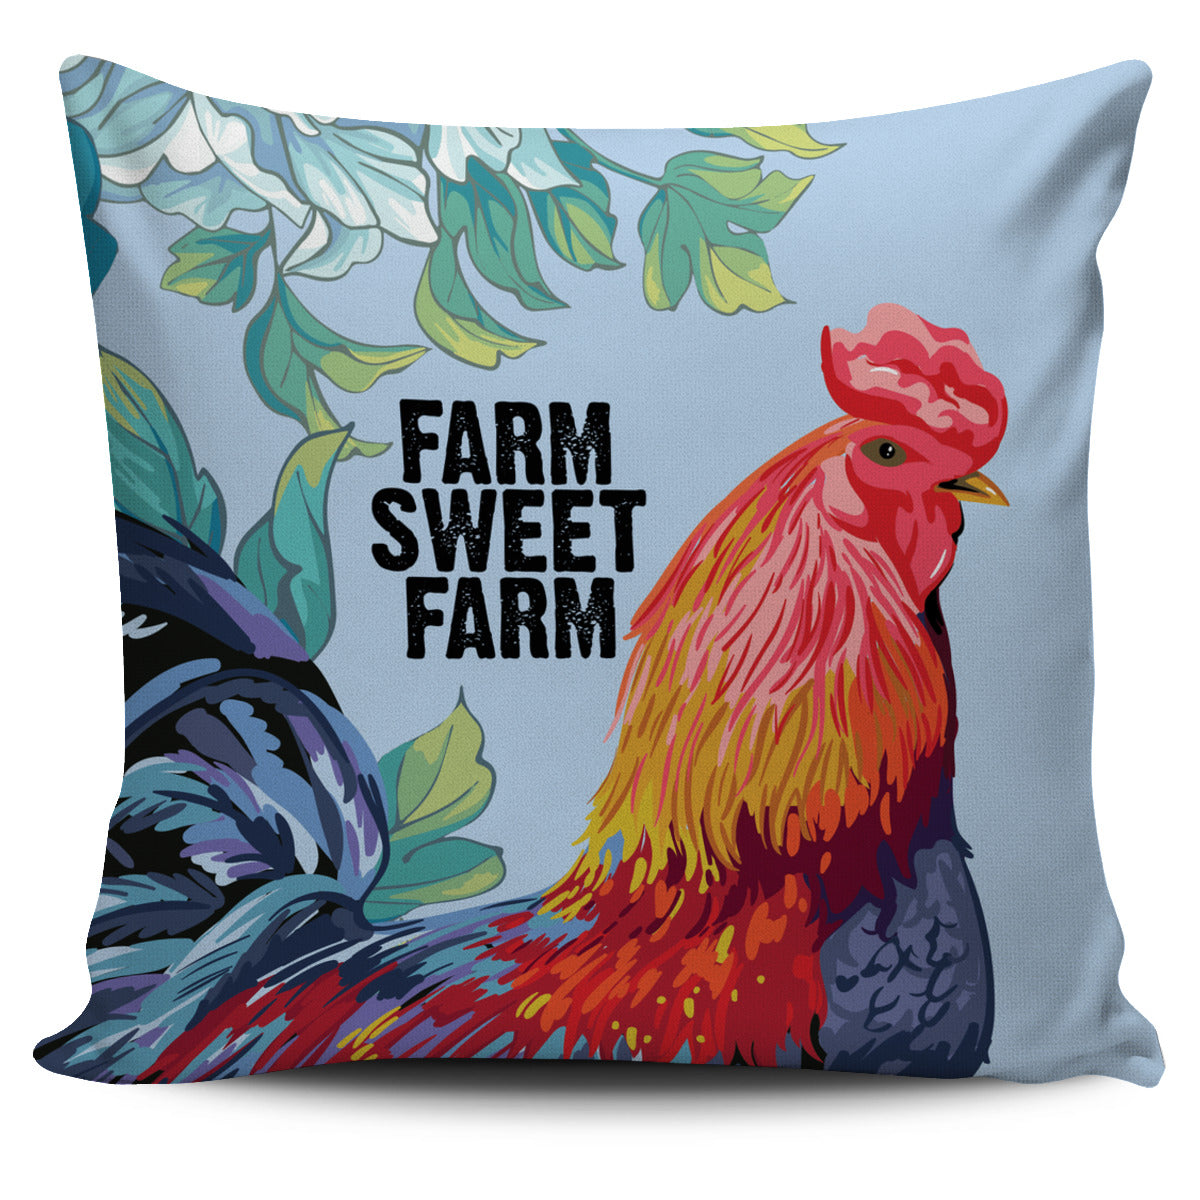 Farm Sweet Farm Pillow Cover